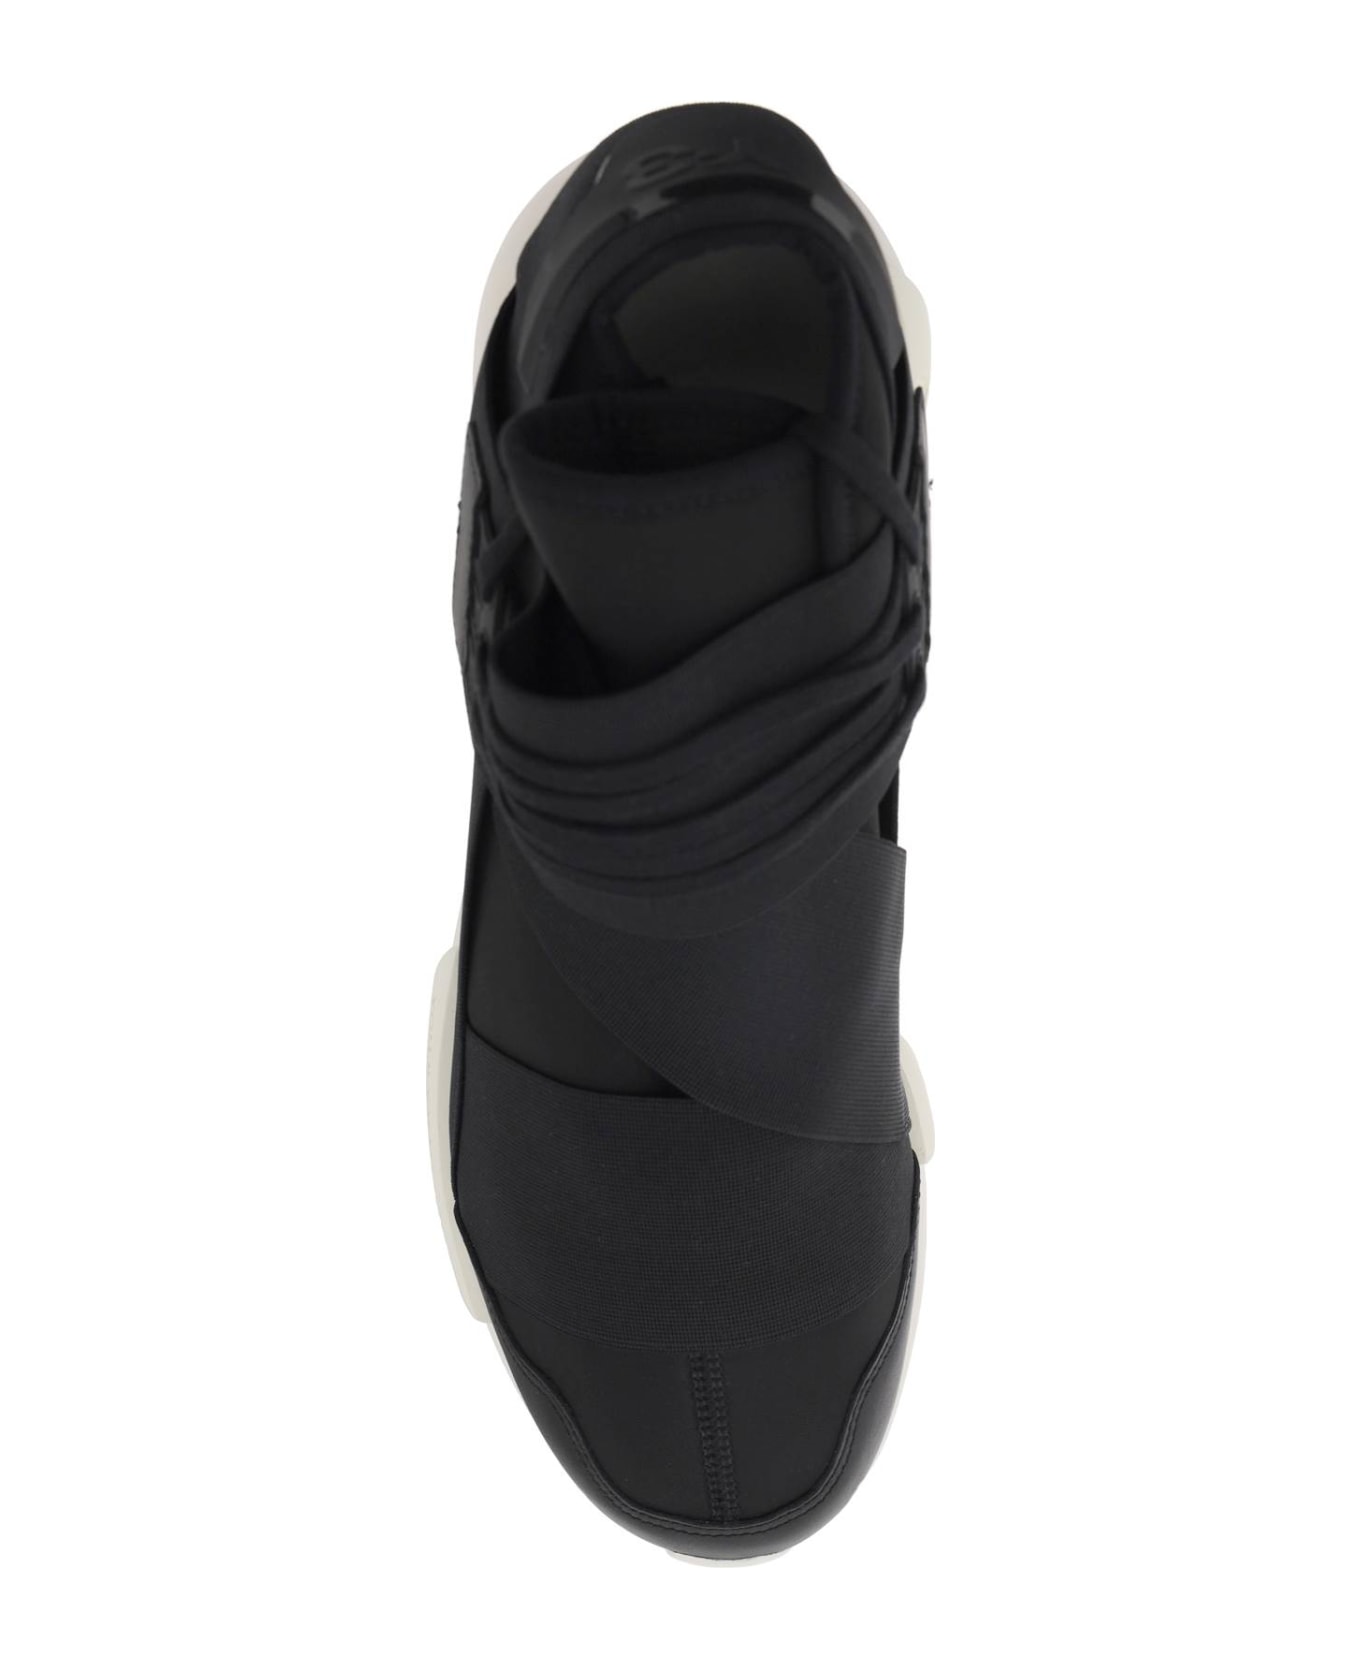 Y-3 Low Qasa Sneakers - BLACK BLACK OWHITE (Black) スニーカー